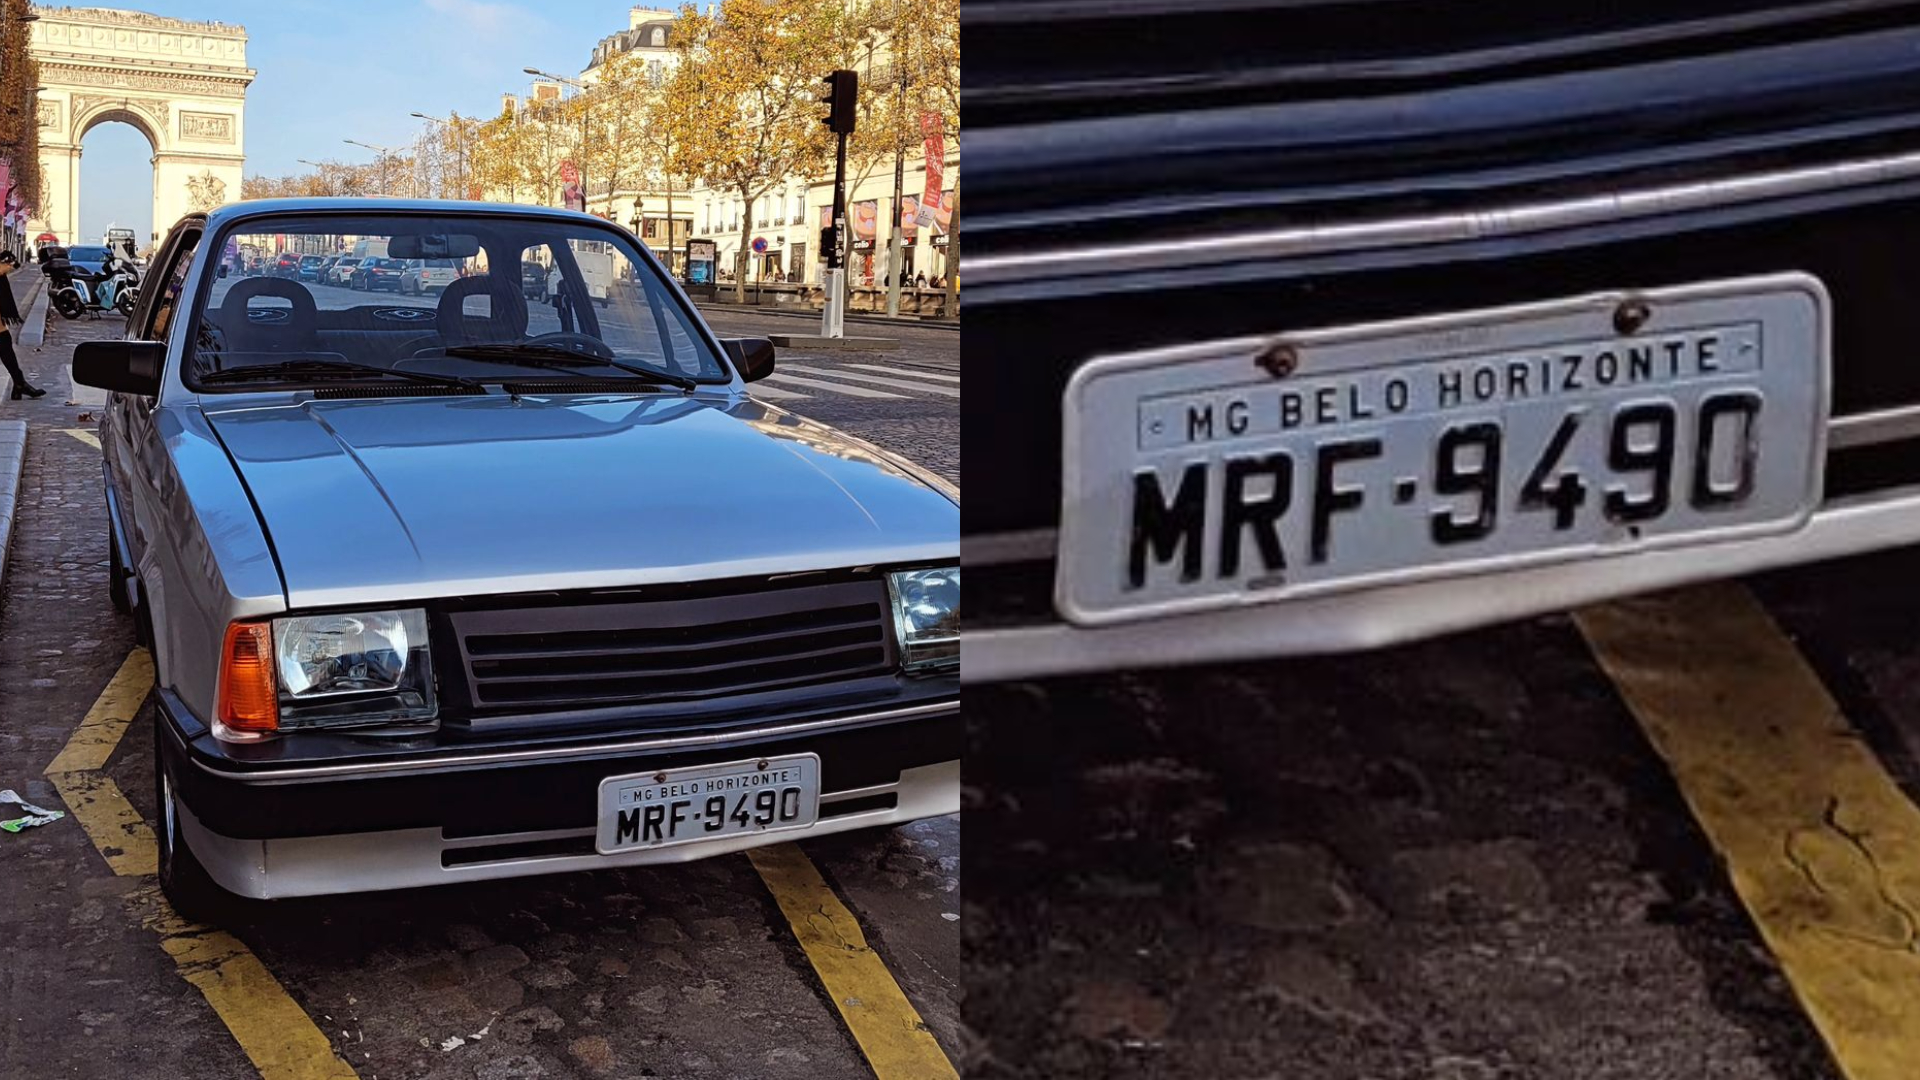 Foto de Chevette em Paris com placa de Belo Horizonte viraliza nas redes sociais; entenda como o carro foi parar lá